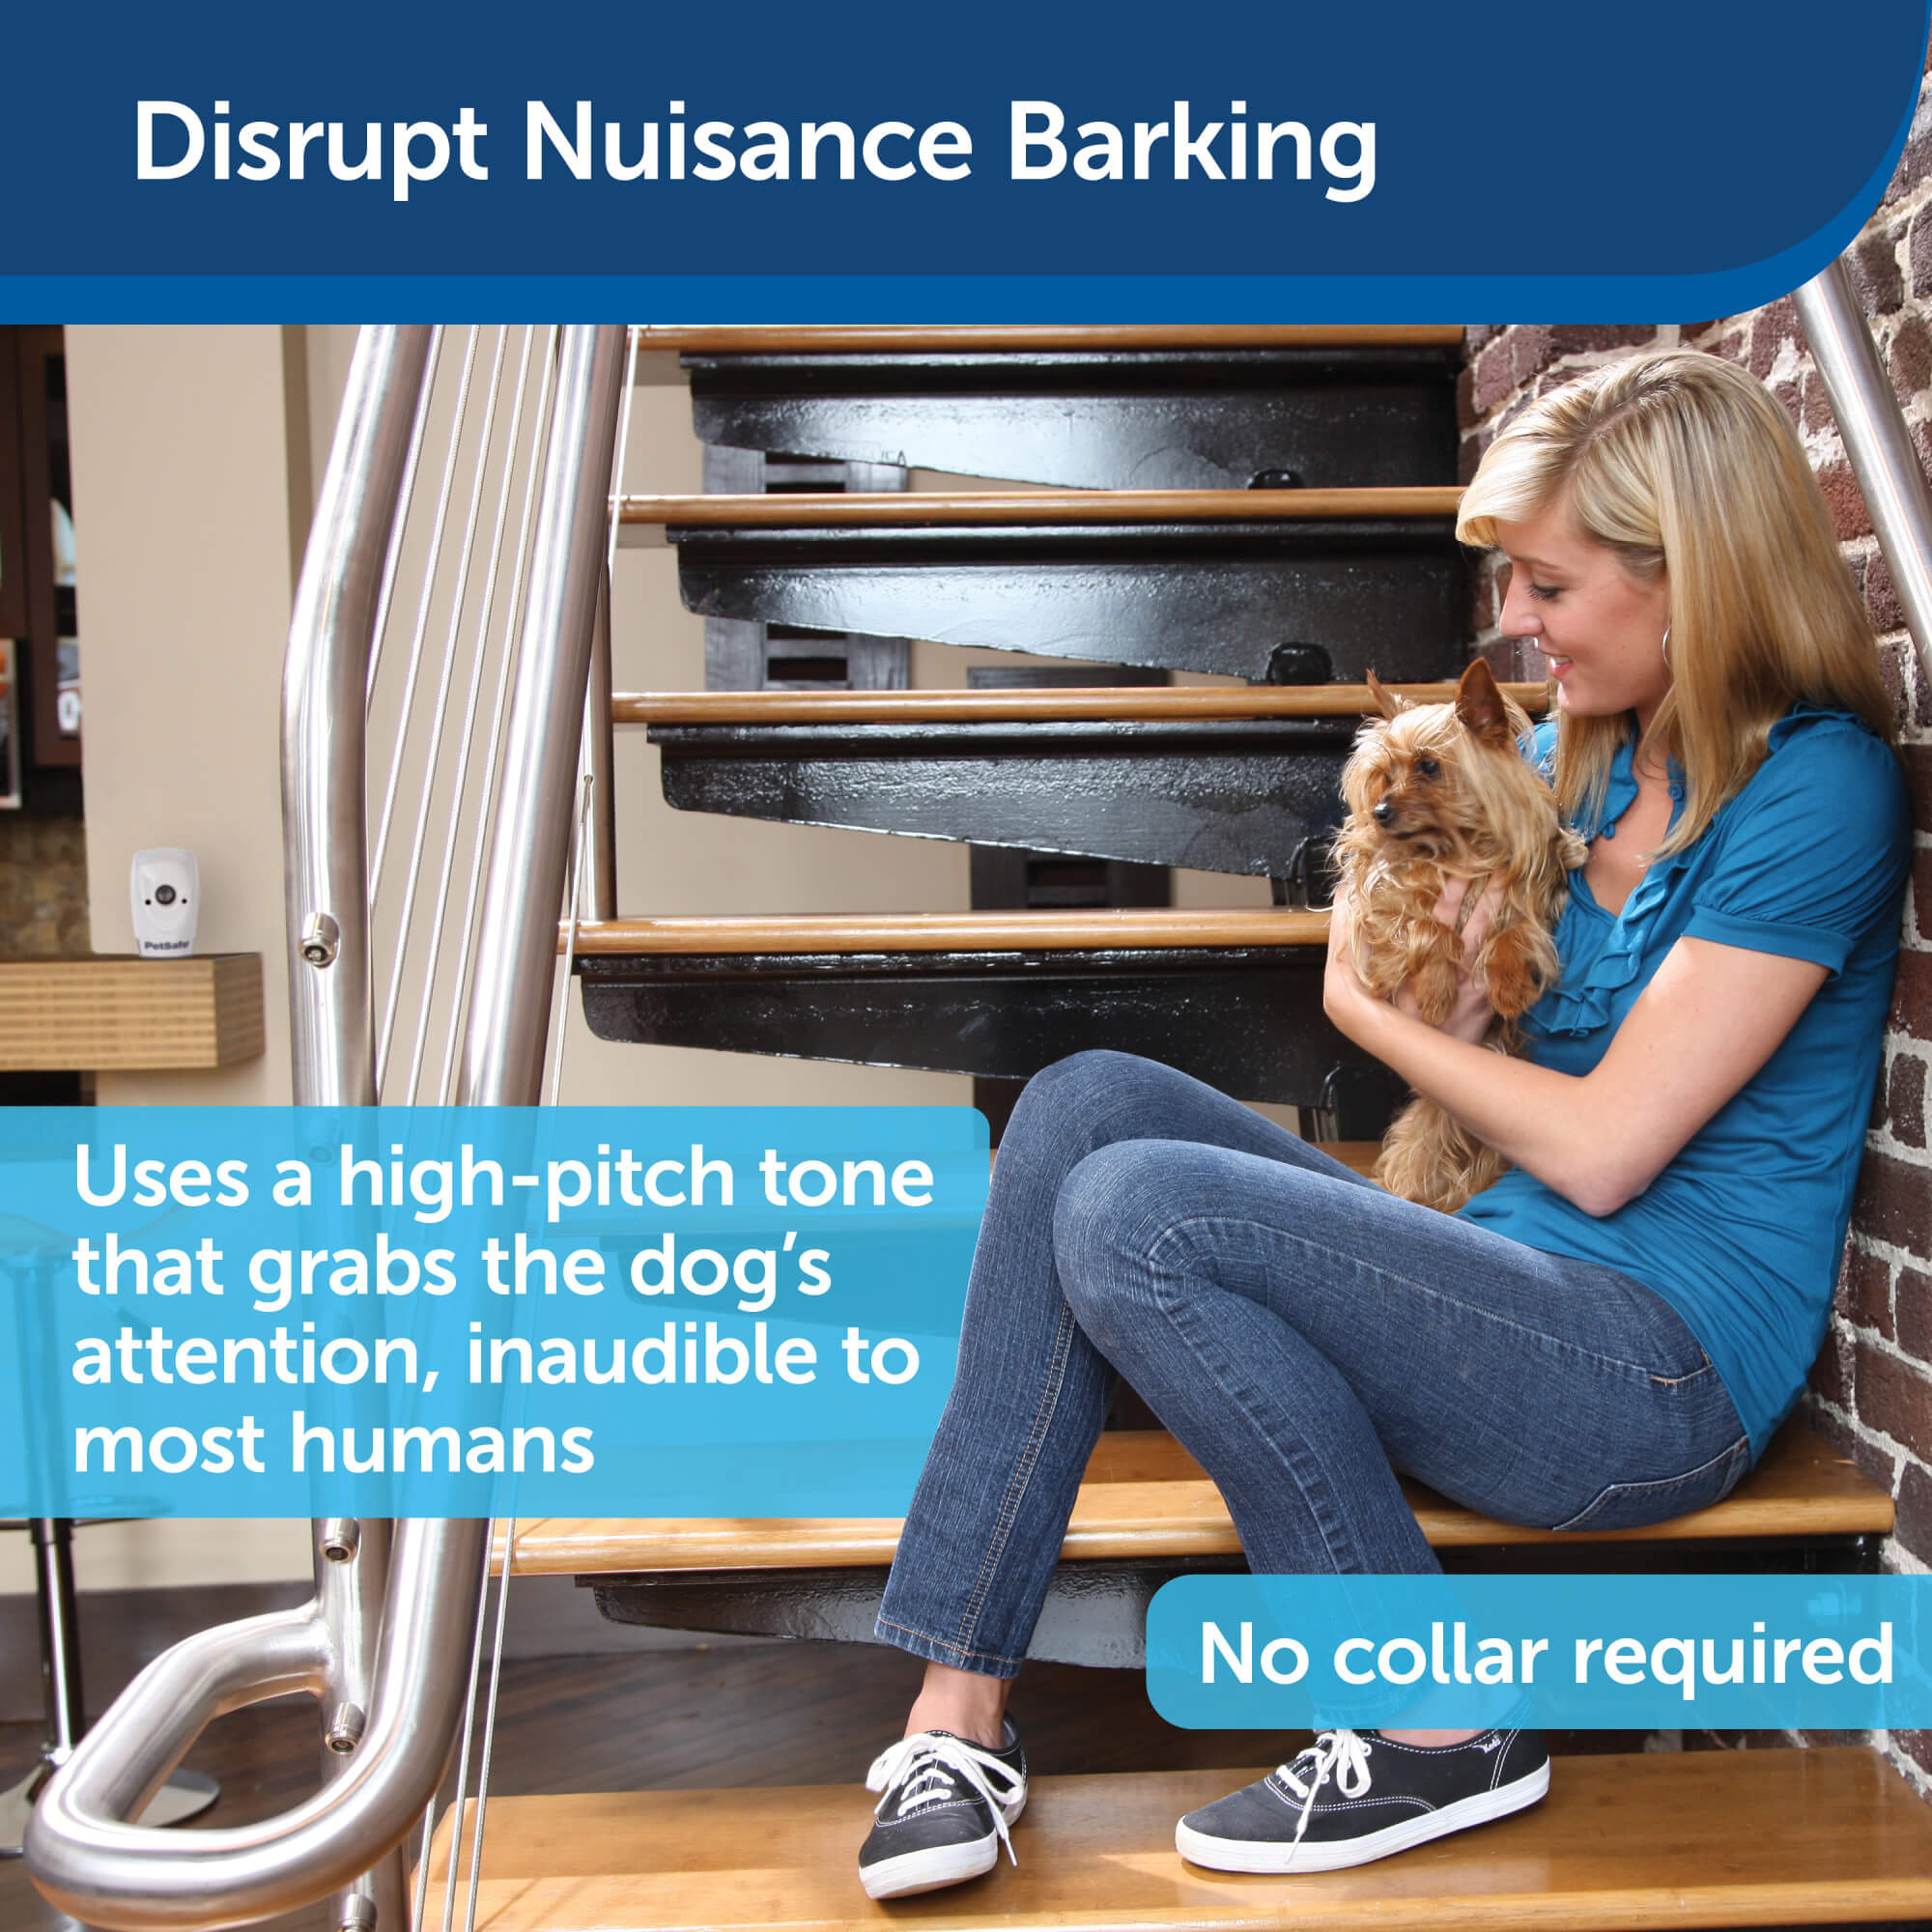 Disrupt nuisance barking